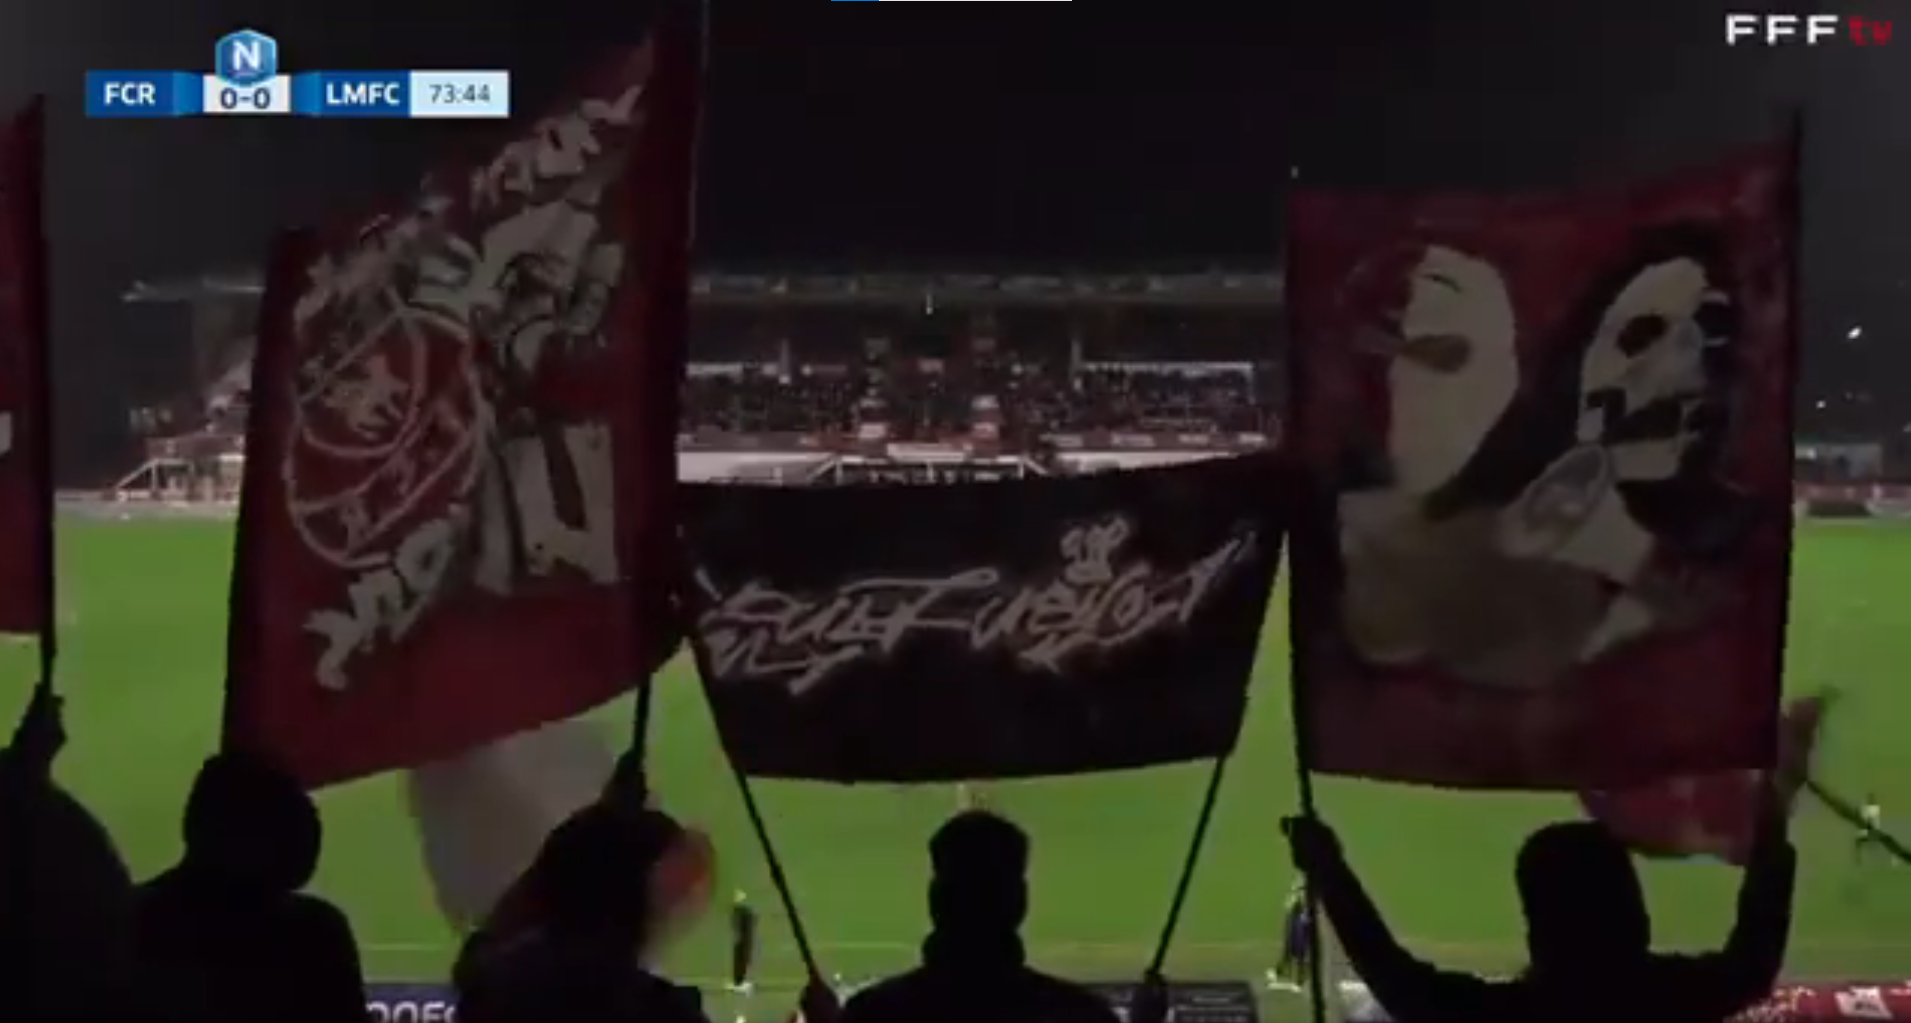 Foot : quand les supporters de Rouen se postent devant la caméra de diffusion pour protester (vidéo)